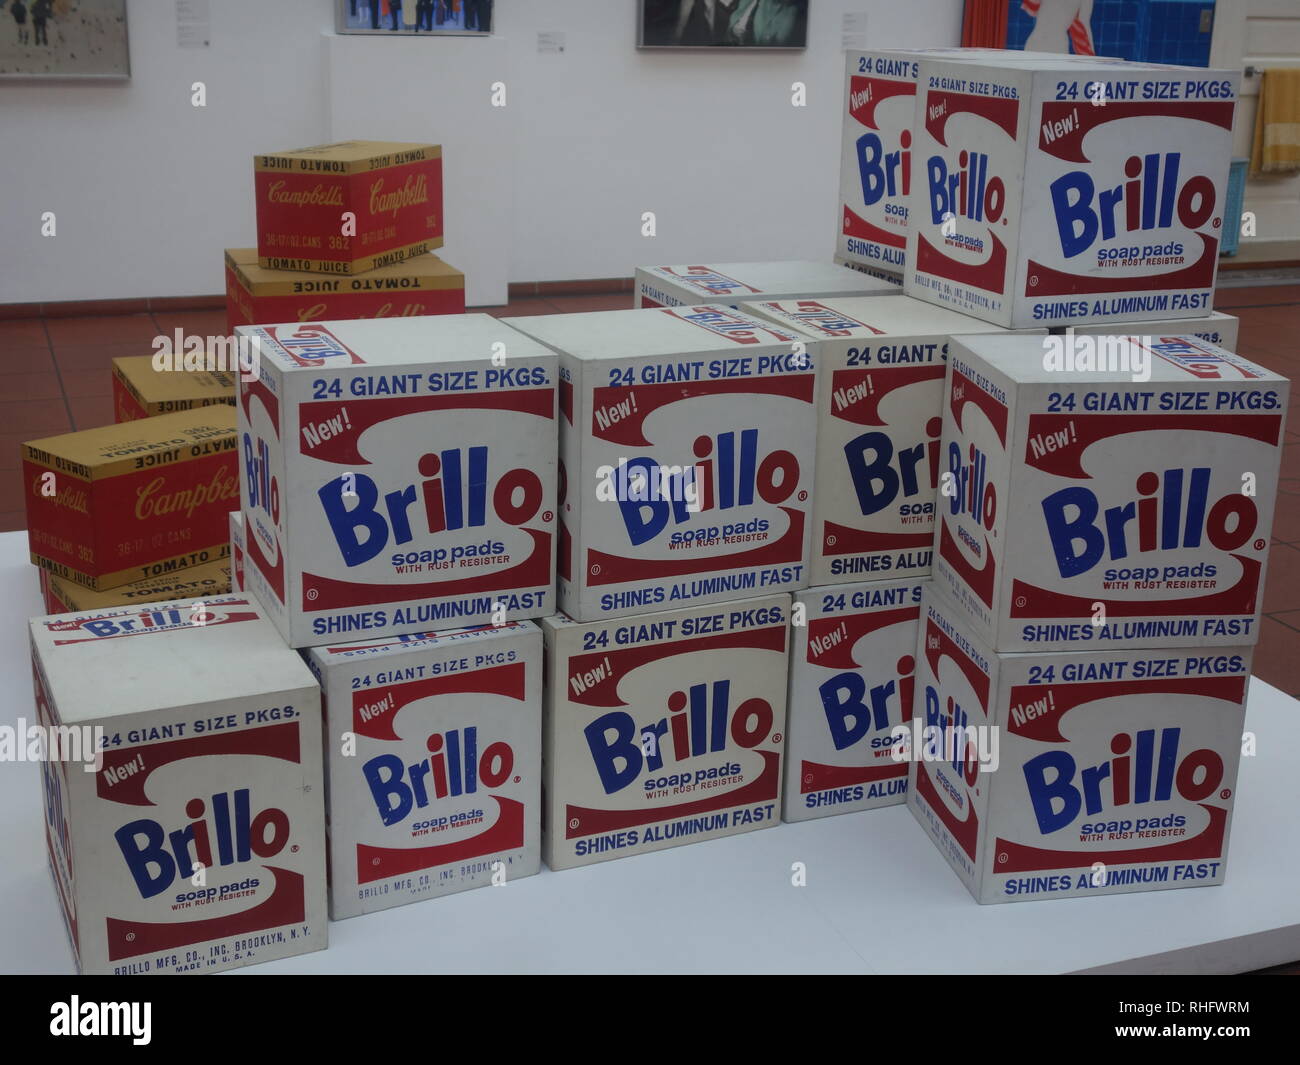 Cuadro de Brillo de Andy Warhol y Campbell's Soup Box arte en exhibición en el Museo Ludwig, la galería de arte moderno de Colonia. Foto de stock